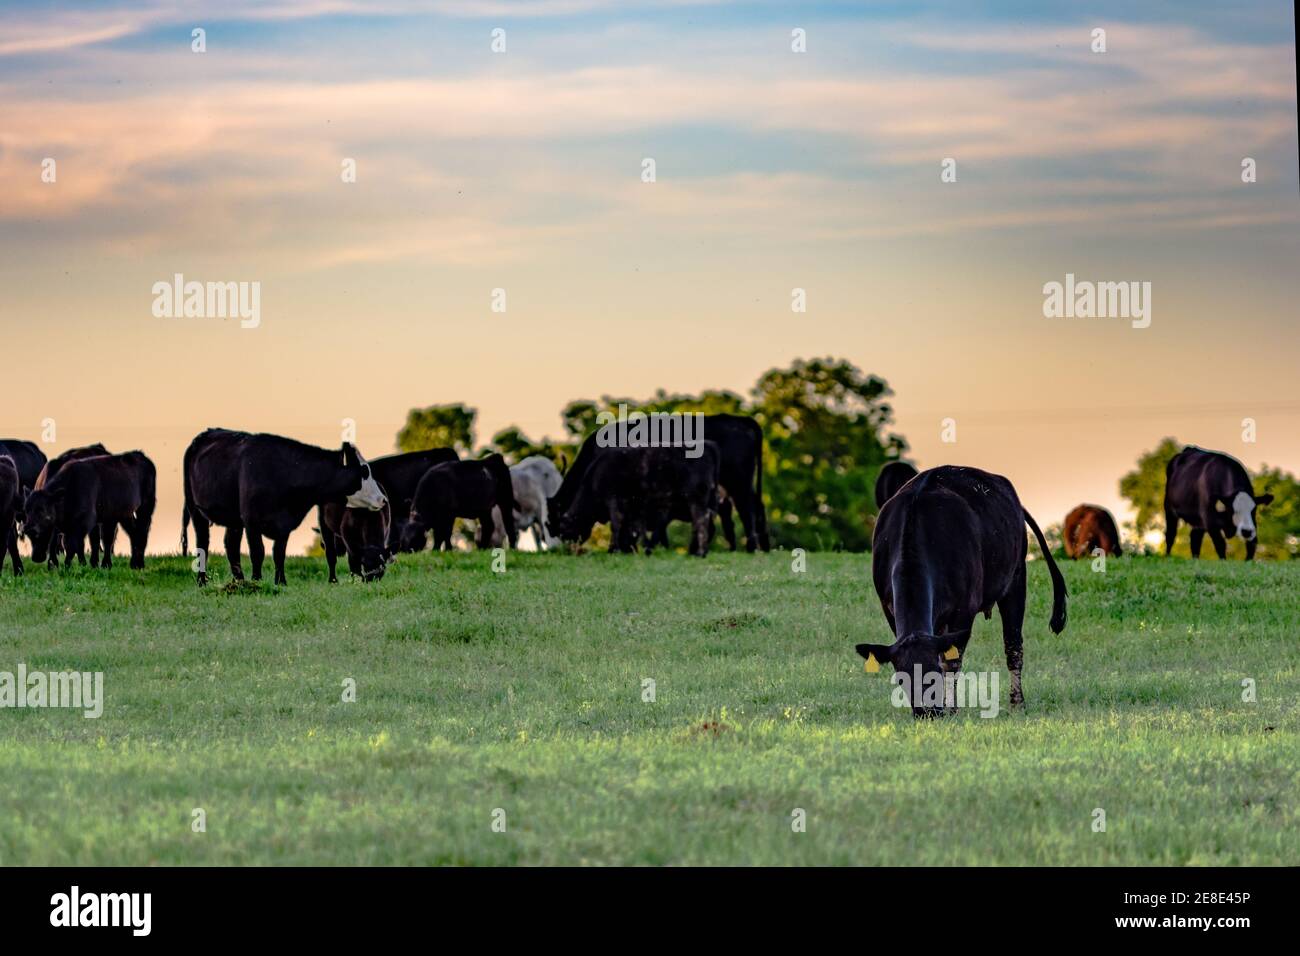 Angus gekreuzt Rinder grasen auf frühen Frühlingsgras mit einem Blauer und rosa Sonnenuntergang Himmel Stockfoto